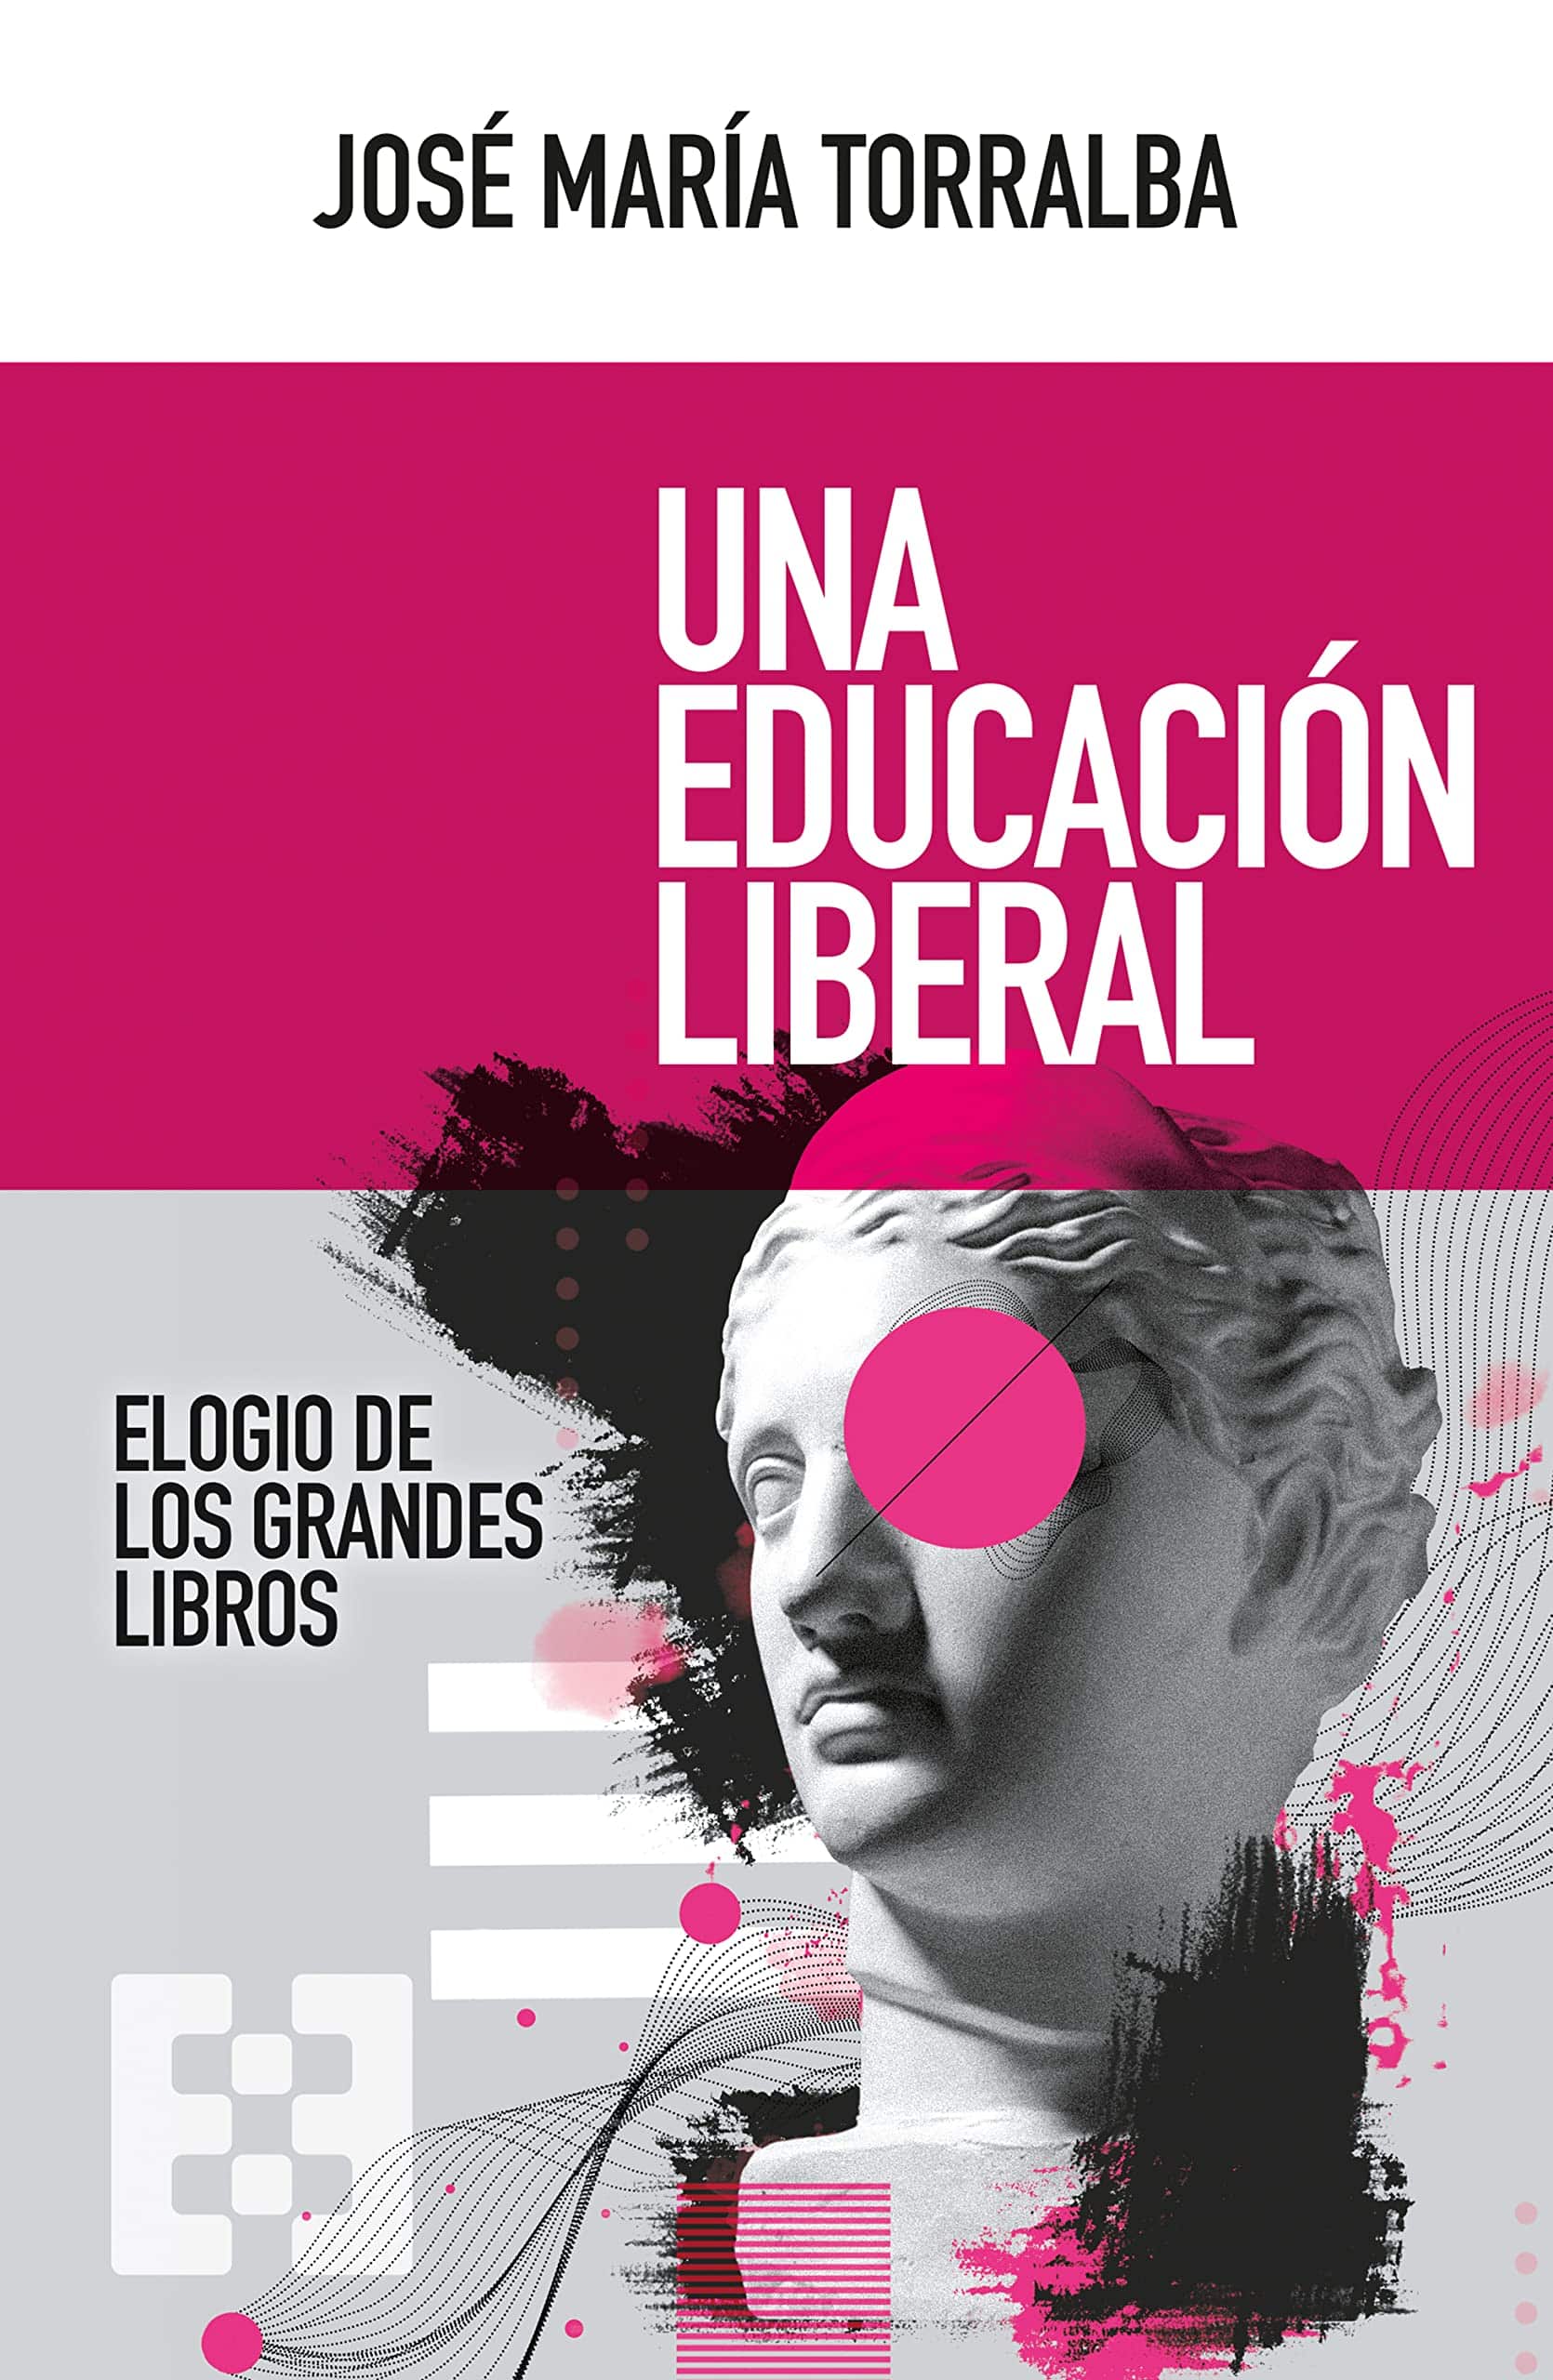 Una educación liberal. José María Torralba